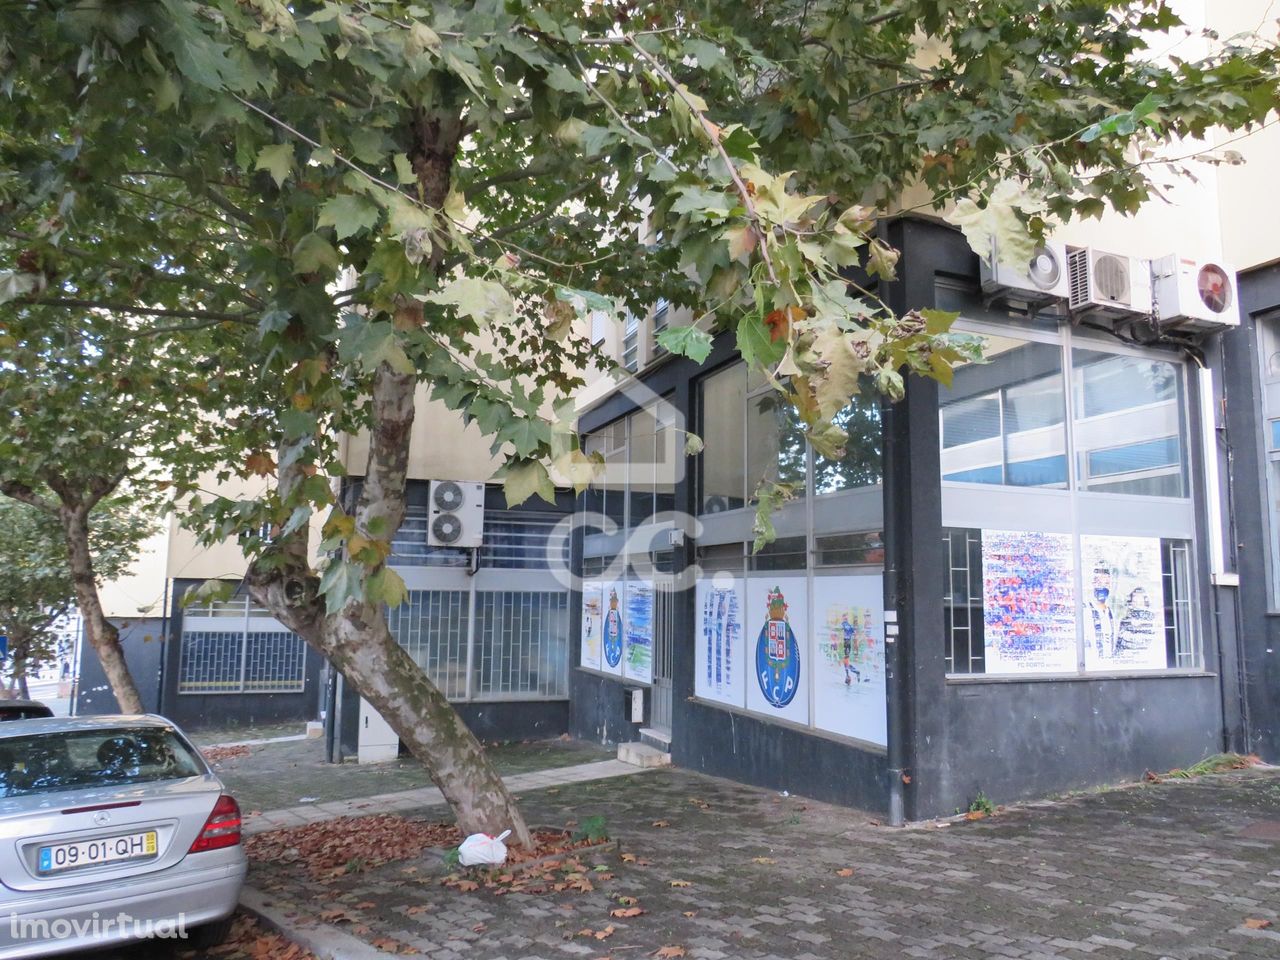 Loja com vários gabinetes, escritório e armazém, em Rio Tinto